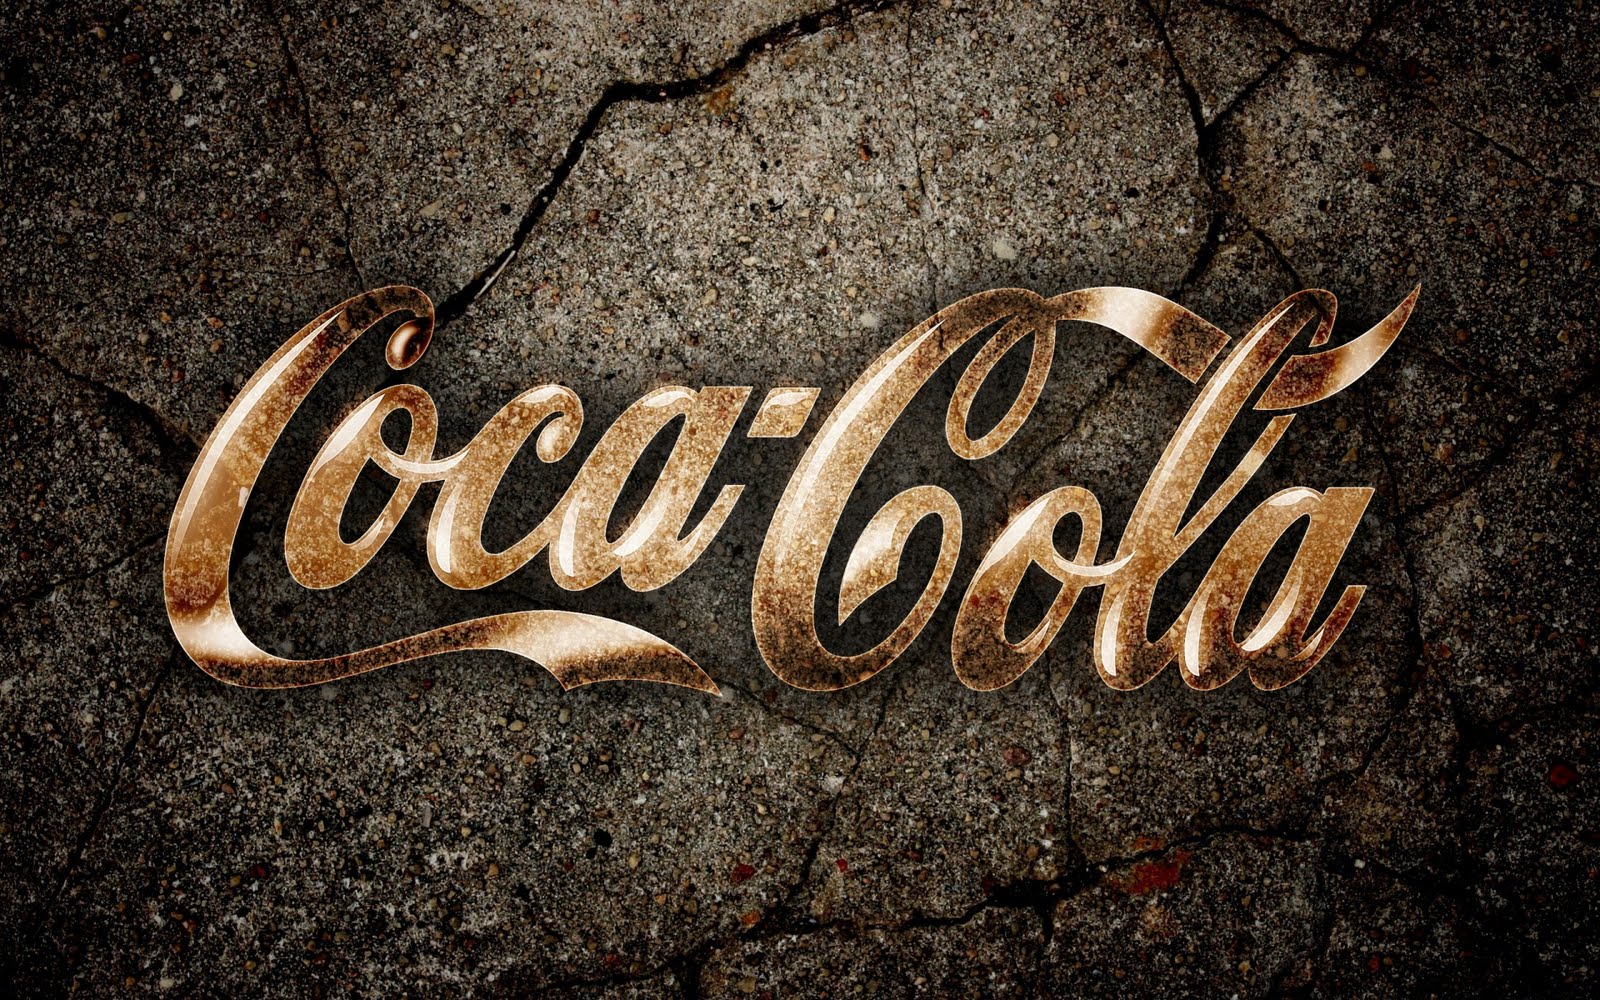 Logotipo De Coca Cola Wallpaper Banco Imagenes